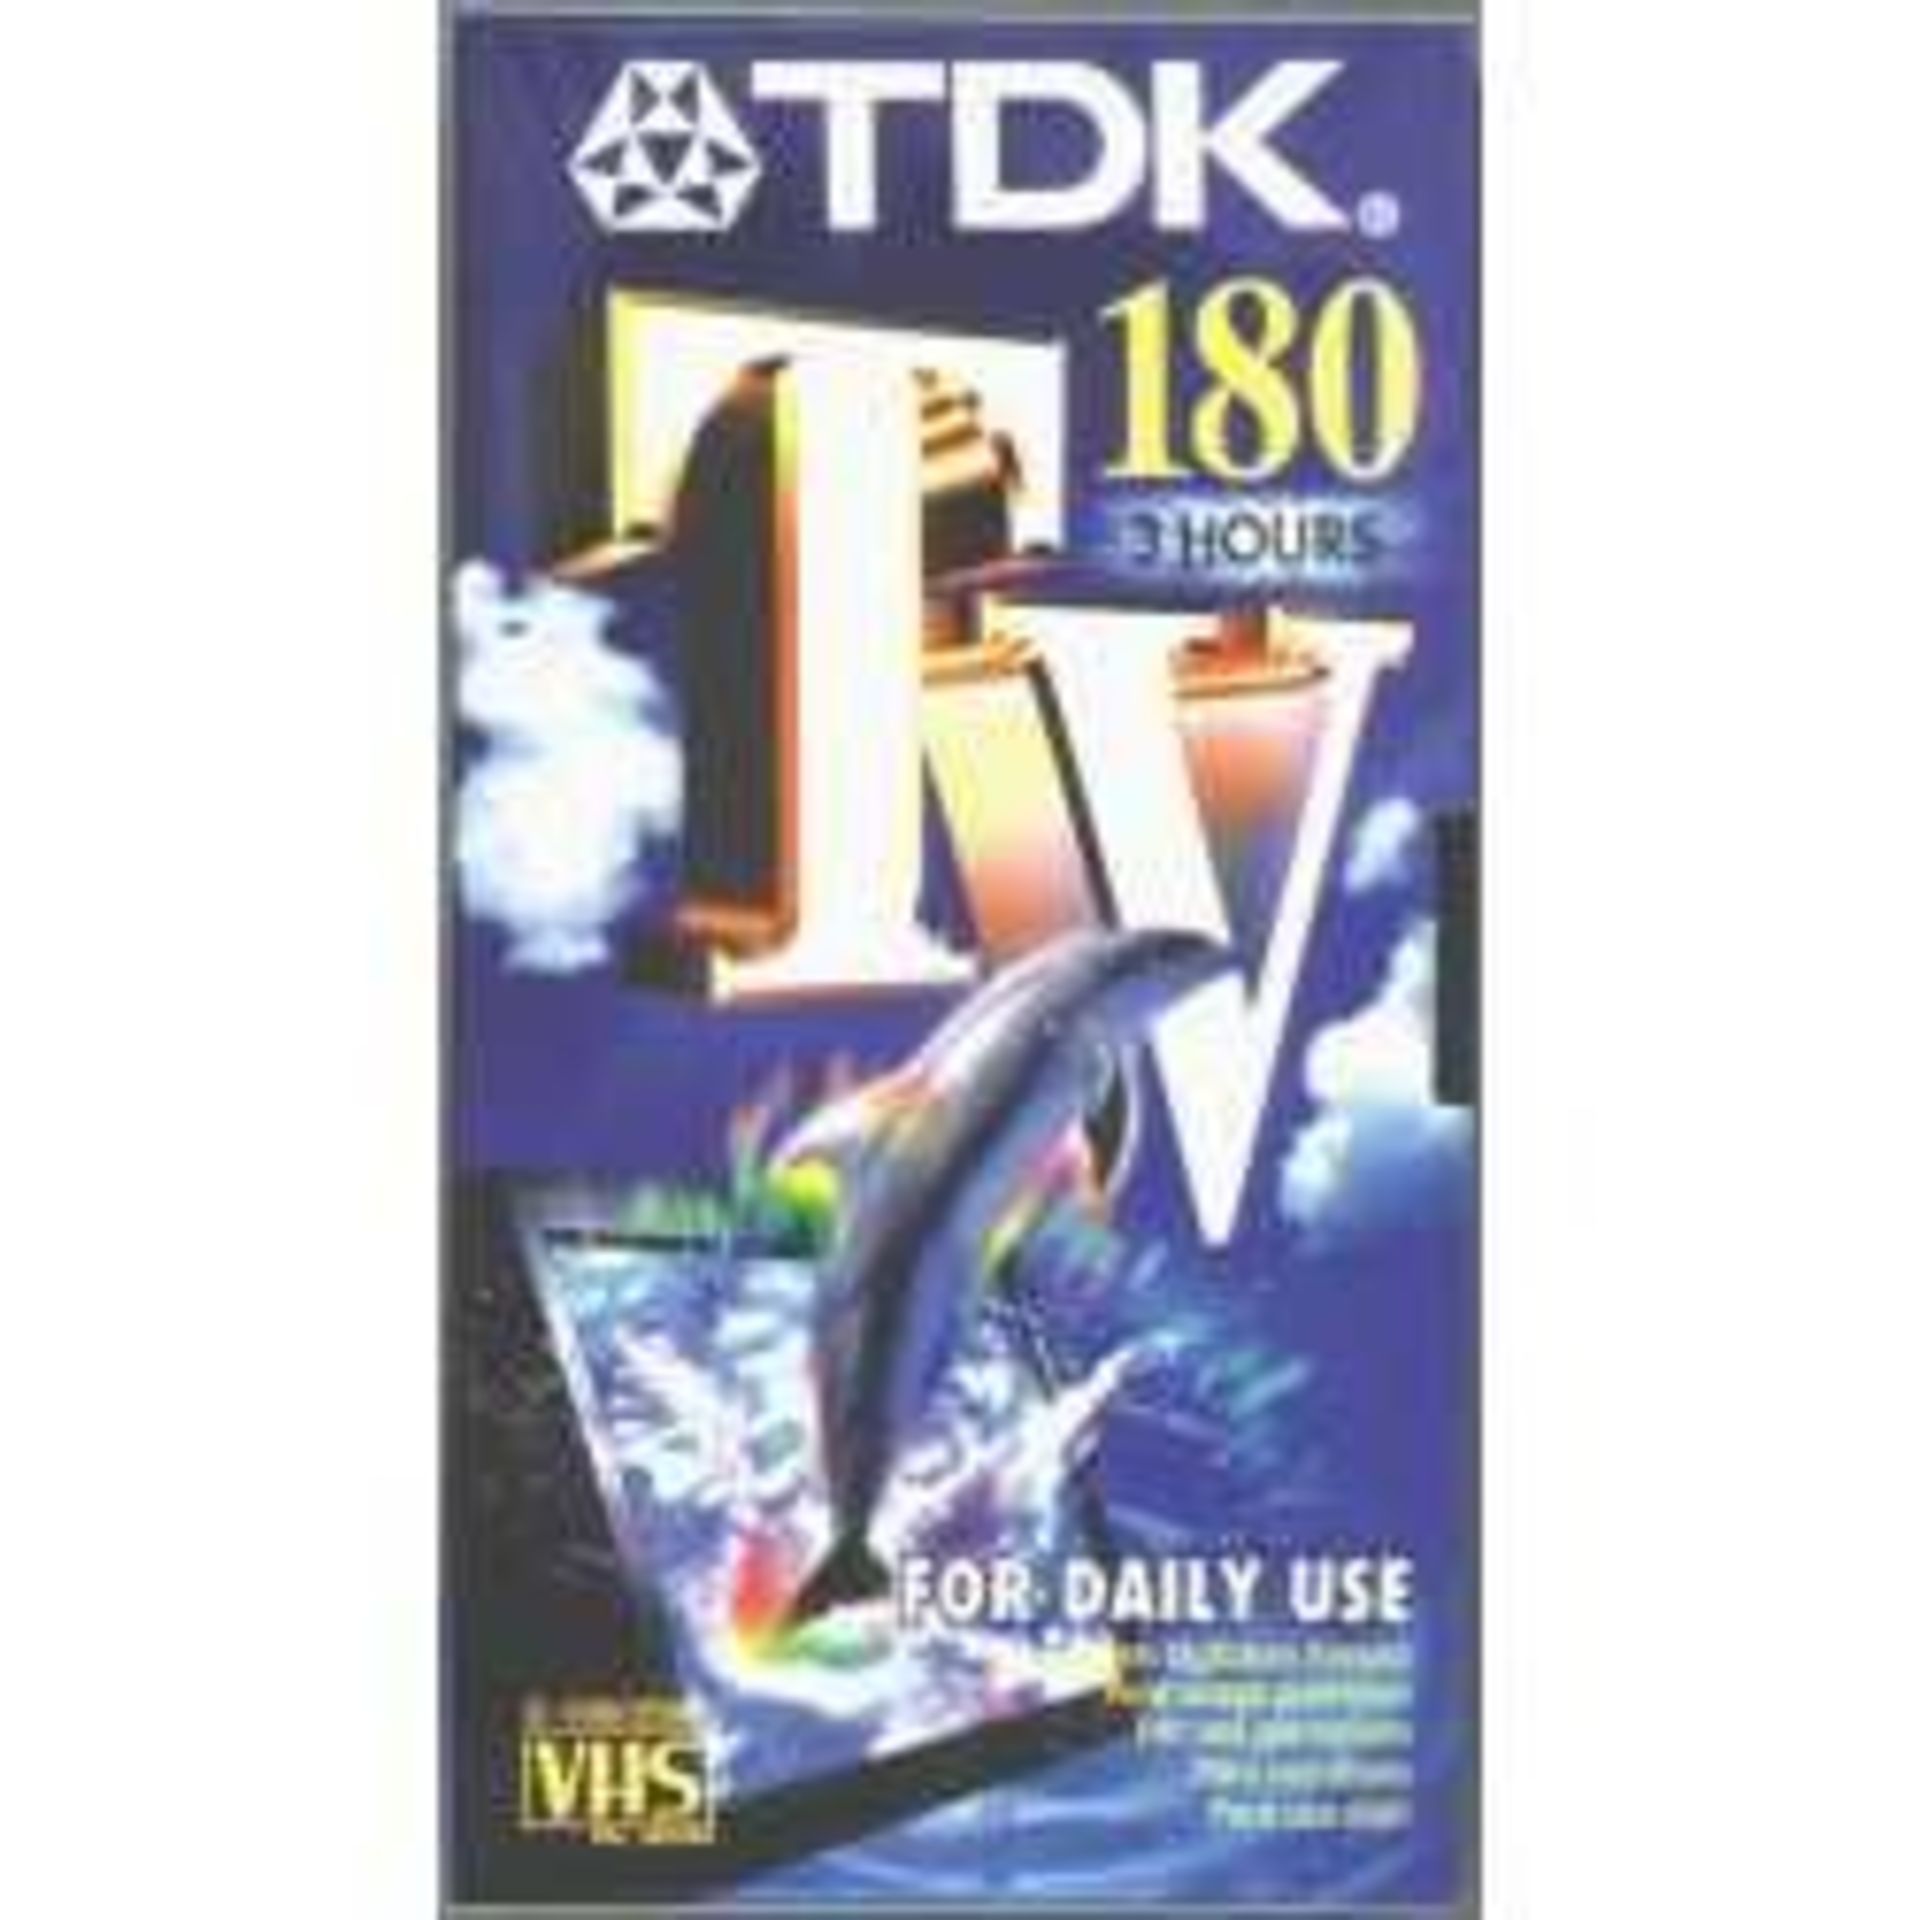 TDK E 180 TV Blank Tapes 3pcs